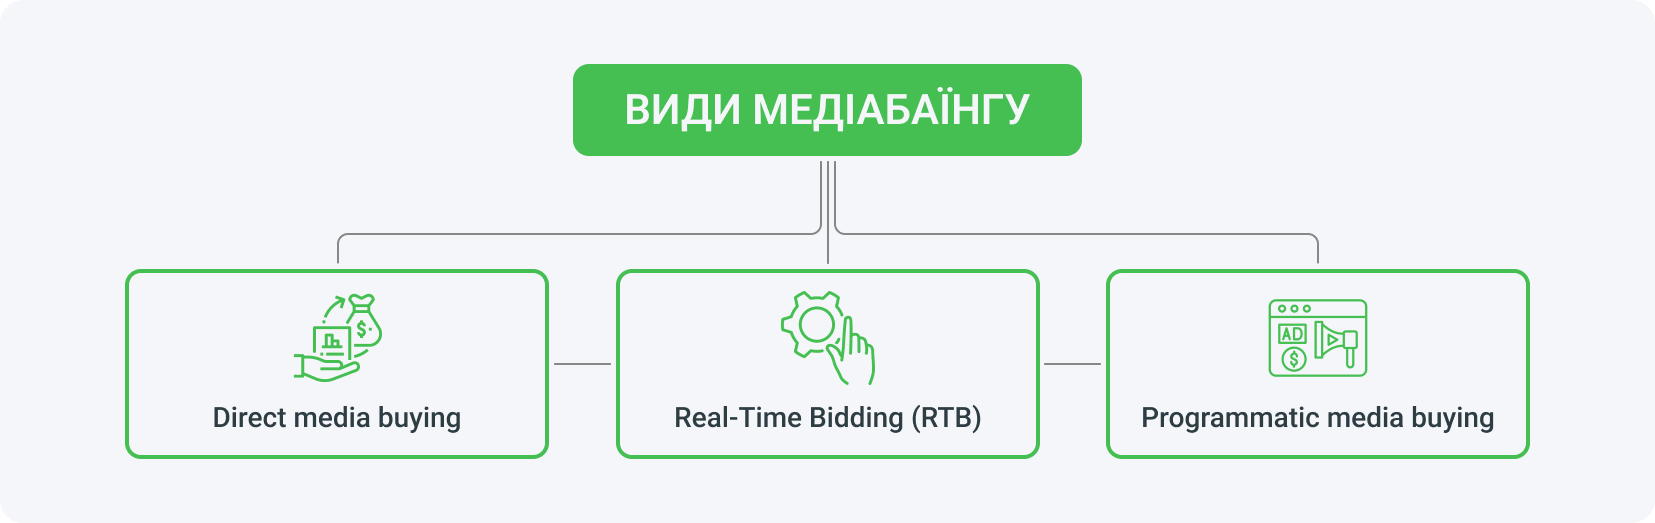 Медіабаїнг можна розділити на direct, real-time bidding і programmatic.